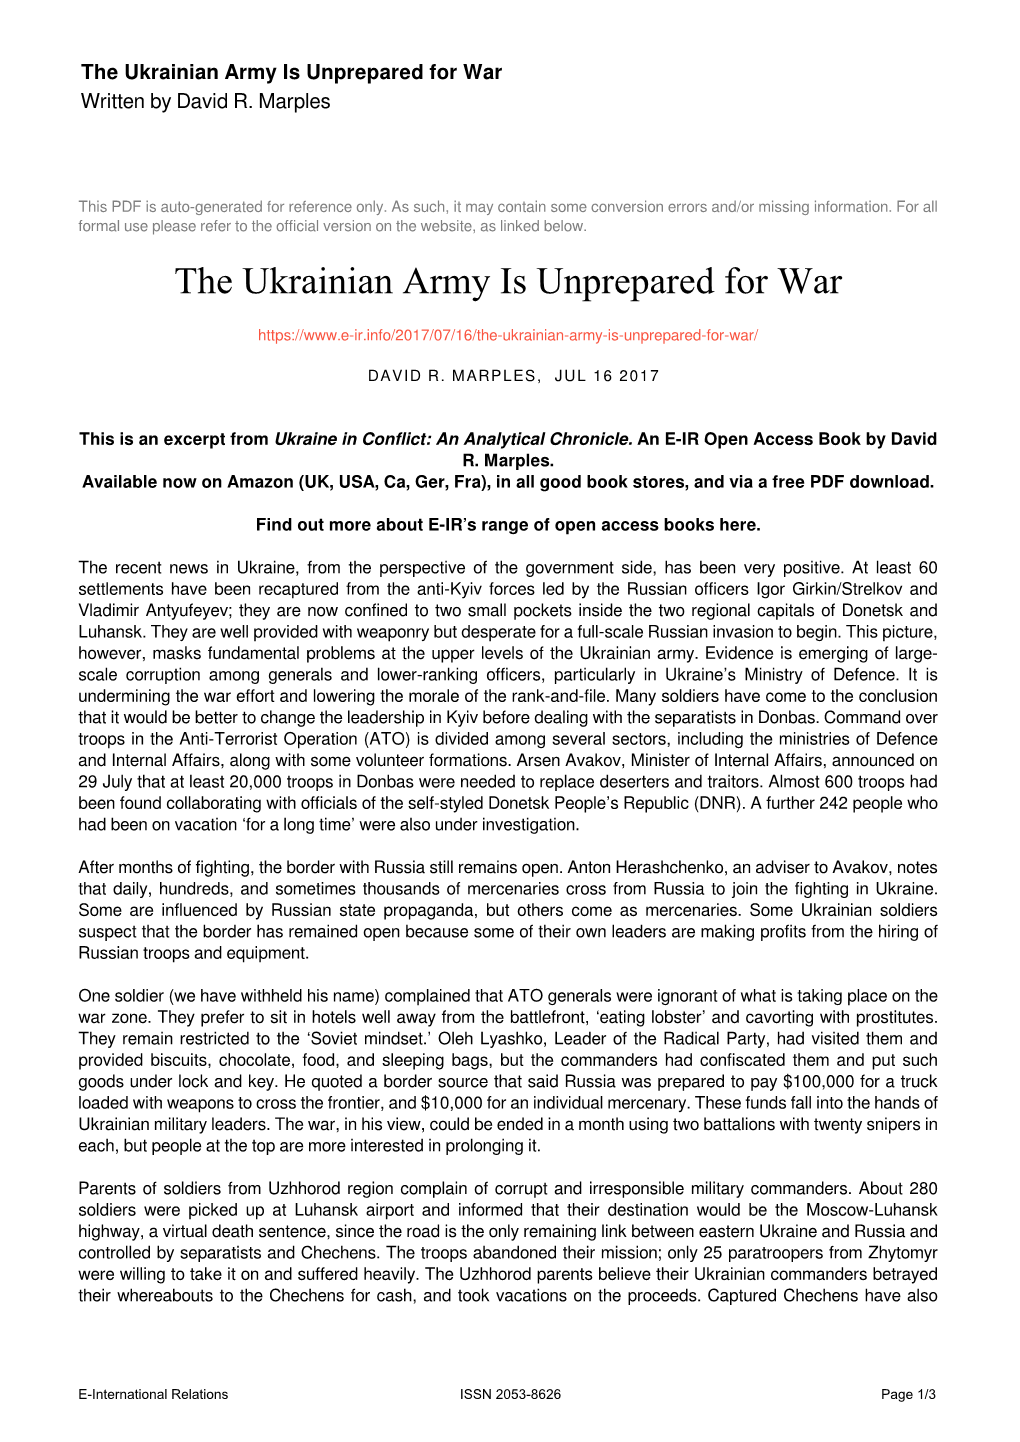 The Ukrainian Army Is Unprepared for War Written by David R